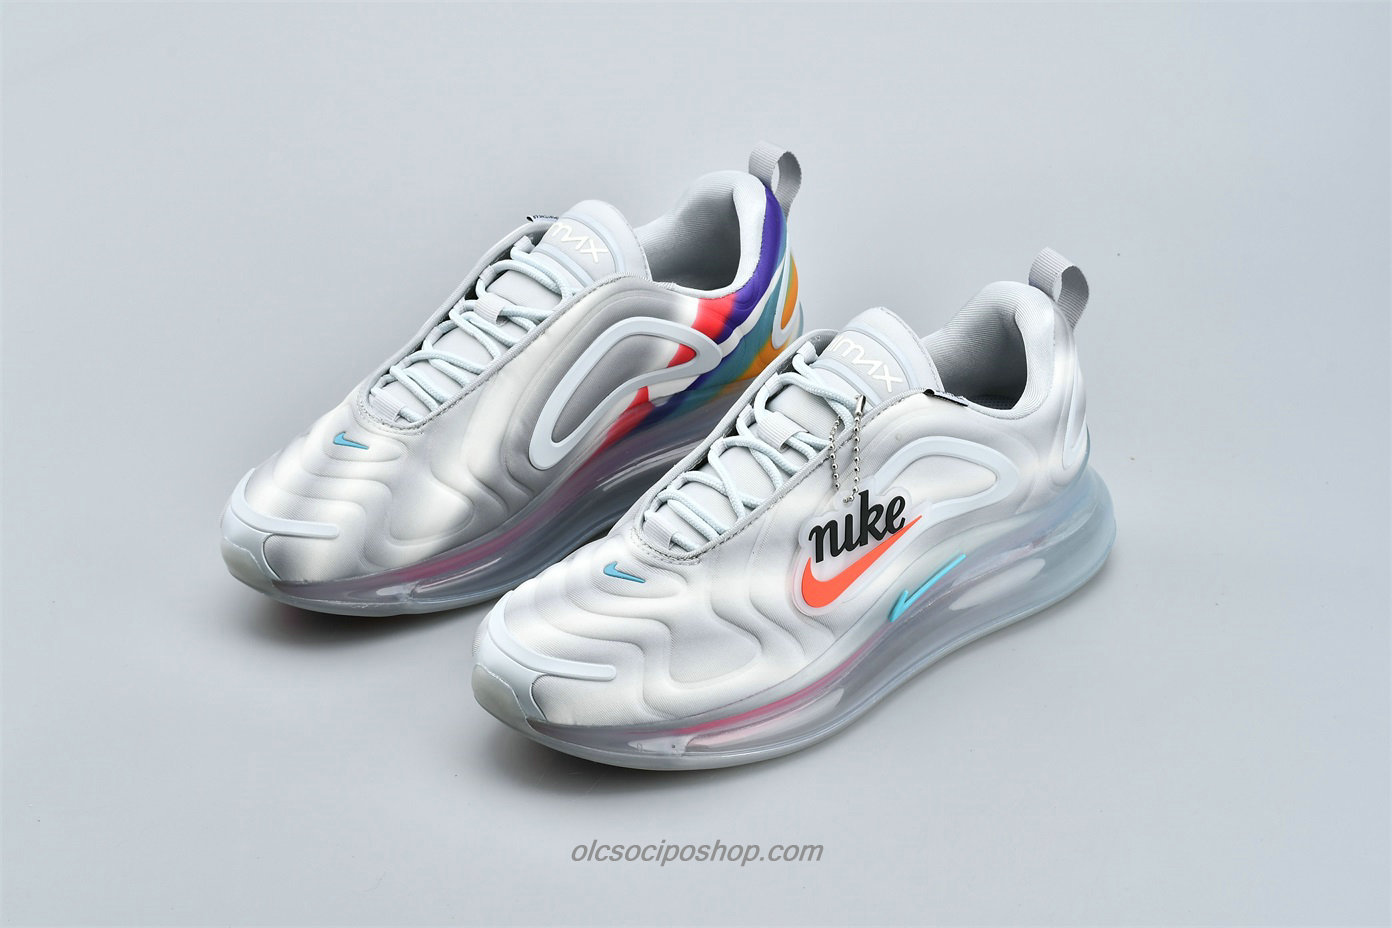 Nike Air Max 720 Világos szürke Cipők (AO2924 011)